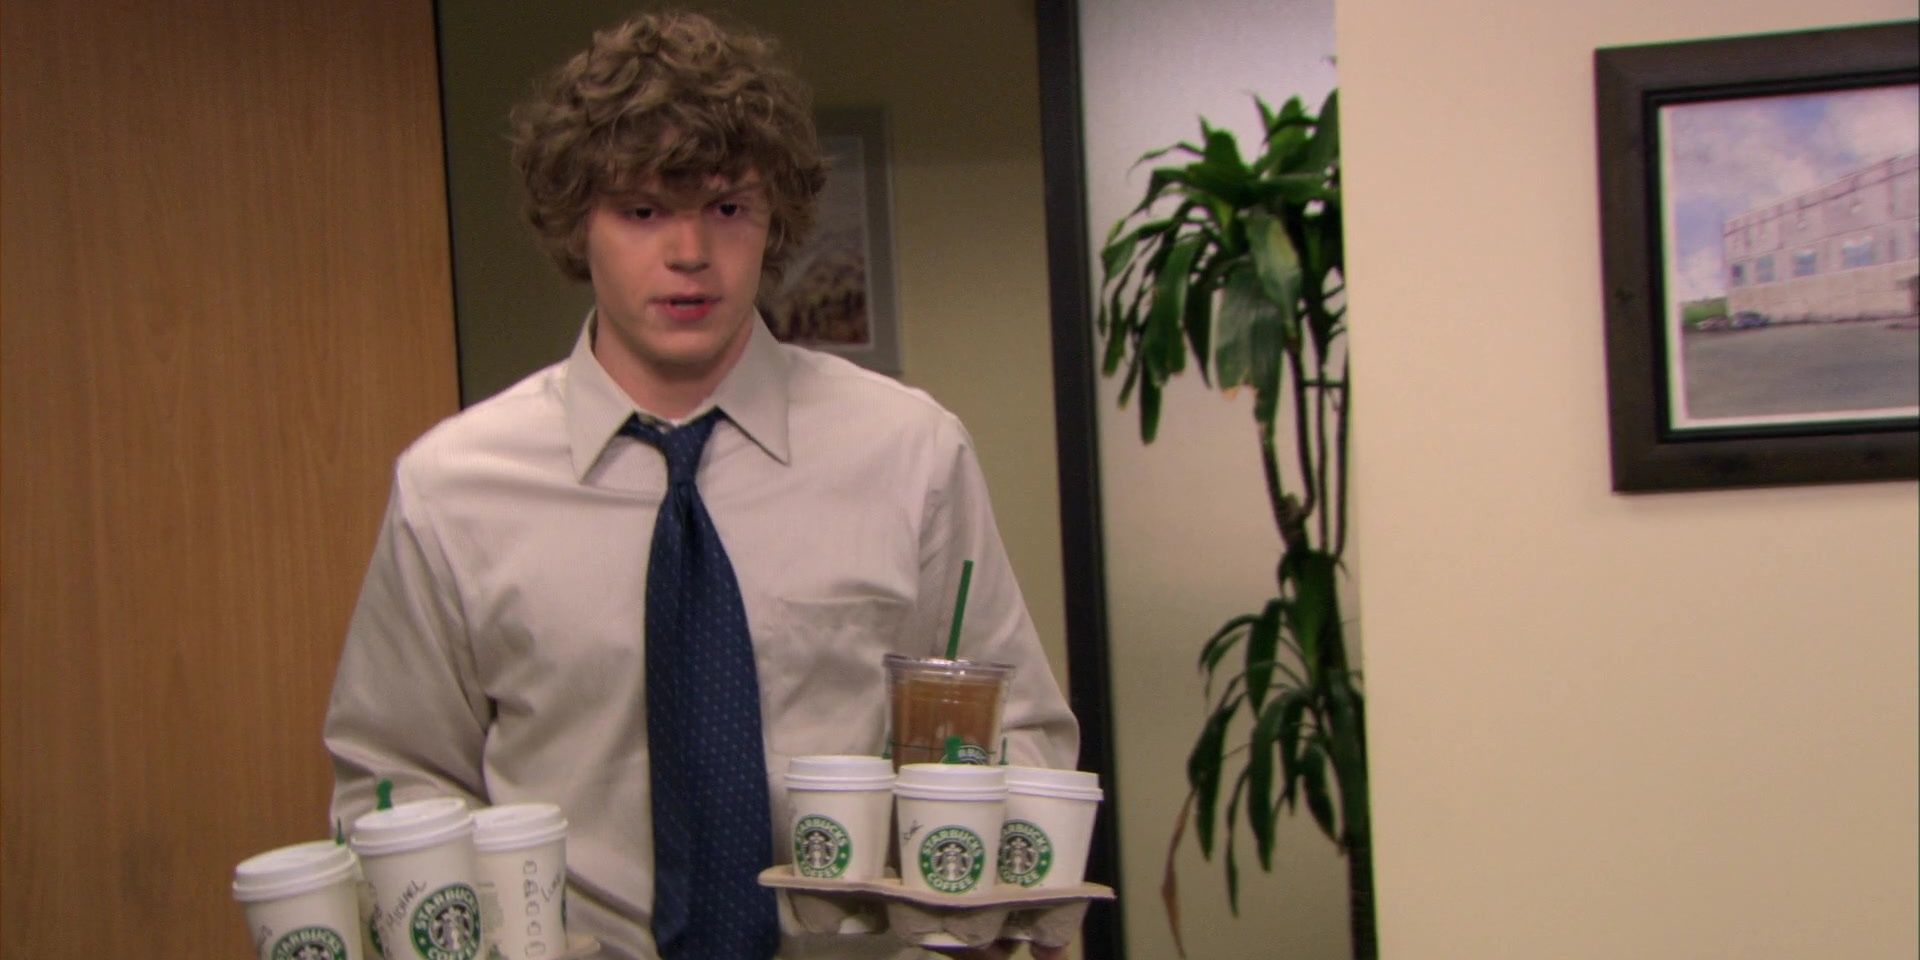 Luke bringing coffee to coworkers